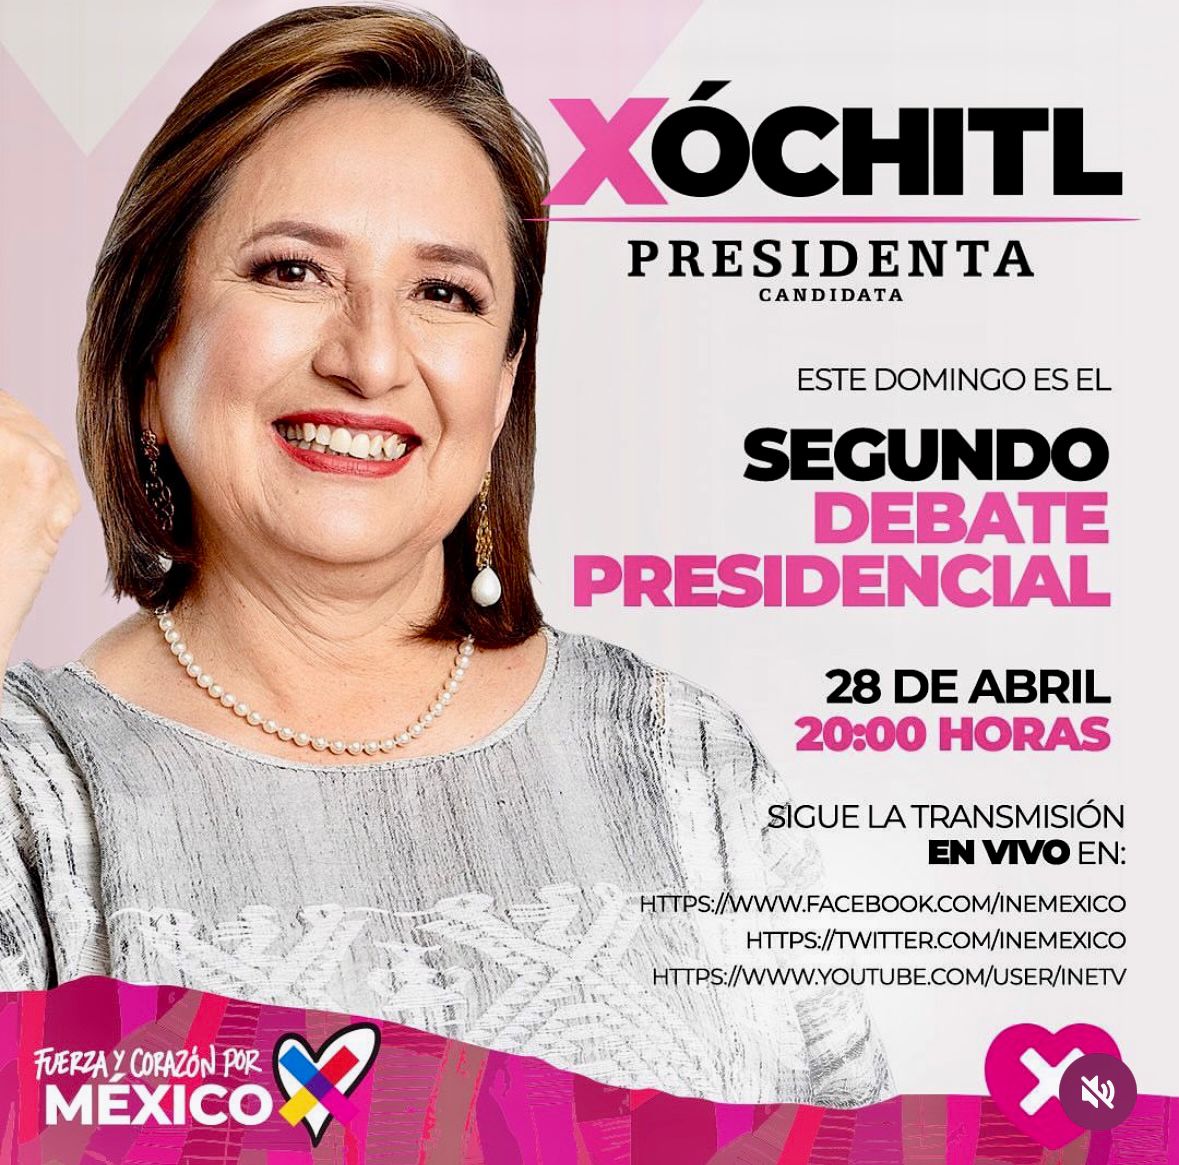 #Xochitl2024
#XochitlGalvezPresidenta 
#XochitlPresidente2024 
#MiVotoEsParaXochitl11 
#CarroCompletoConXochitl